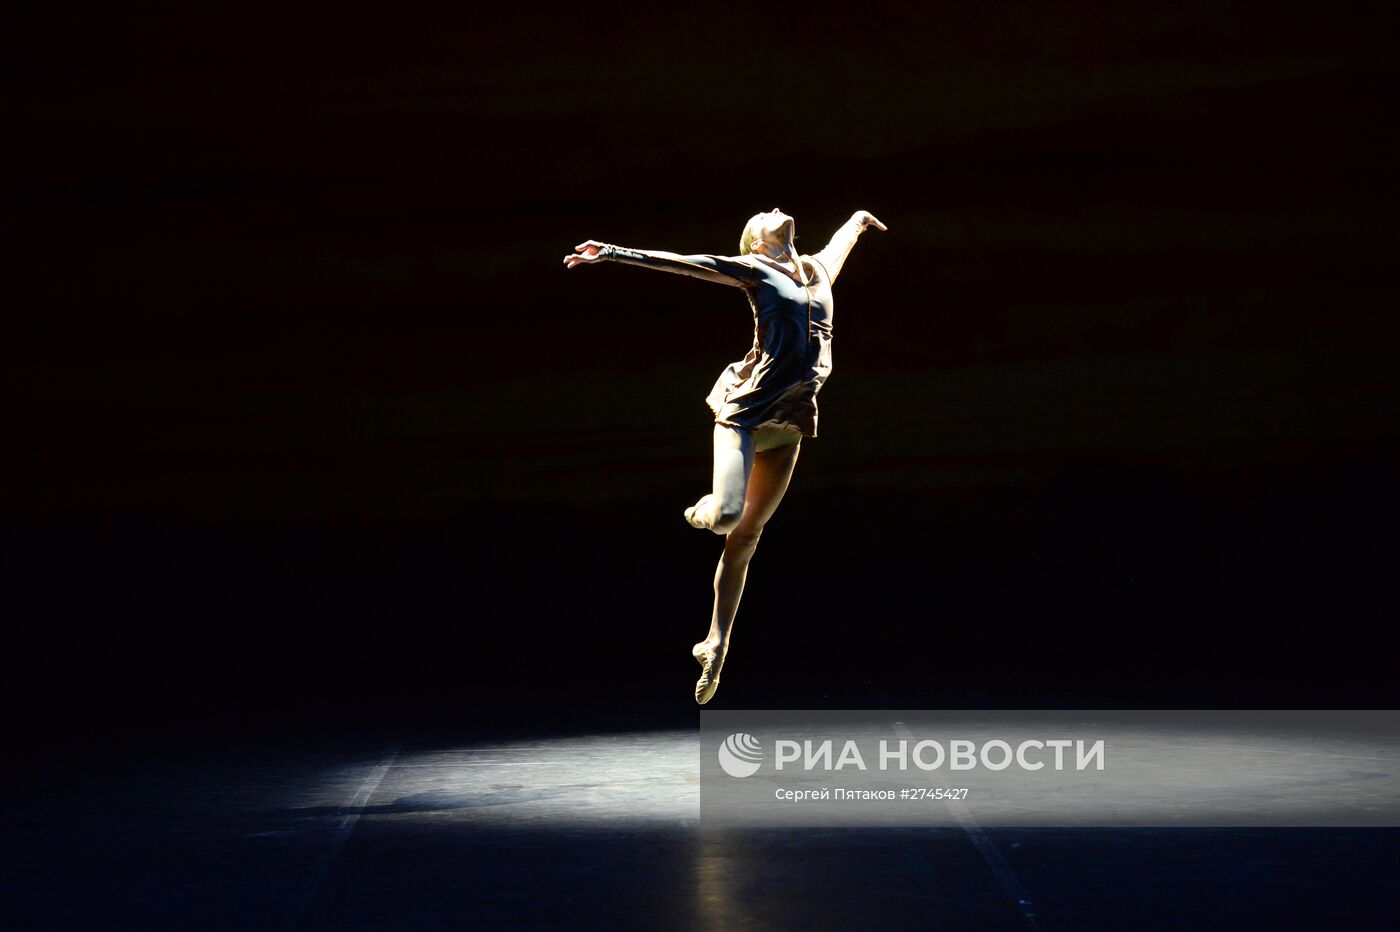 Подготовка к открытию 3-го международного фестиваля современной хореографии "Context. Diana Vishneva"